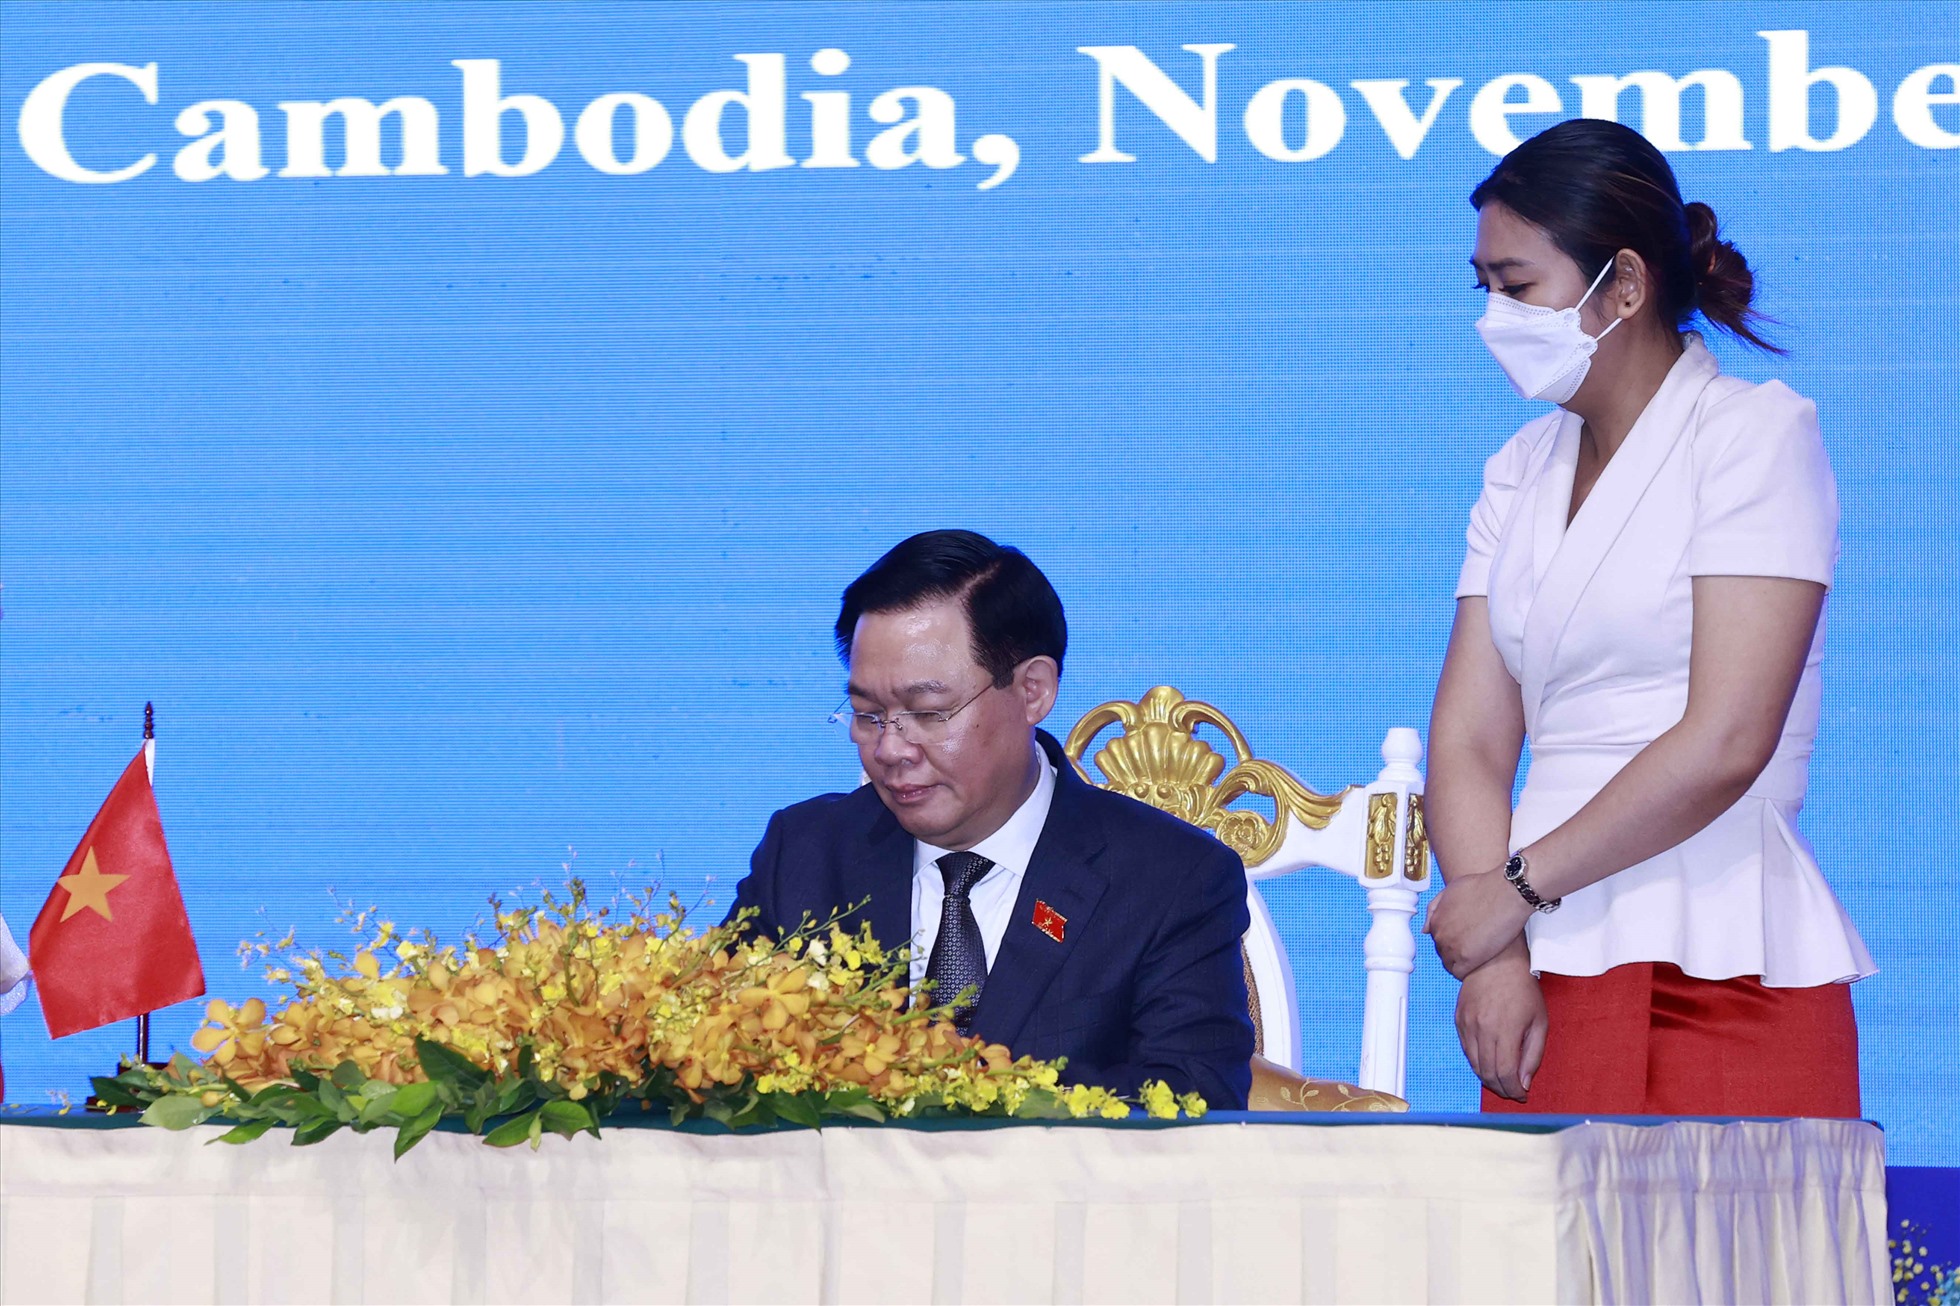 Hội nghị cấp cao Việt Nam - Lào - Campuchia: Những nhà lãnh đạo của ba quốc gia đang hội ngộ để thảo luận việc củng cố hợp tác kinh tế, đối thoại chính trị và cùng nhau giải quyết các vấn đề quan trọng khu vực. Bức ảnh liên quan sẽ giúp bạn tìm hiểu thêm về chủ đề này.